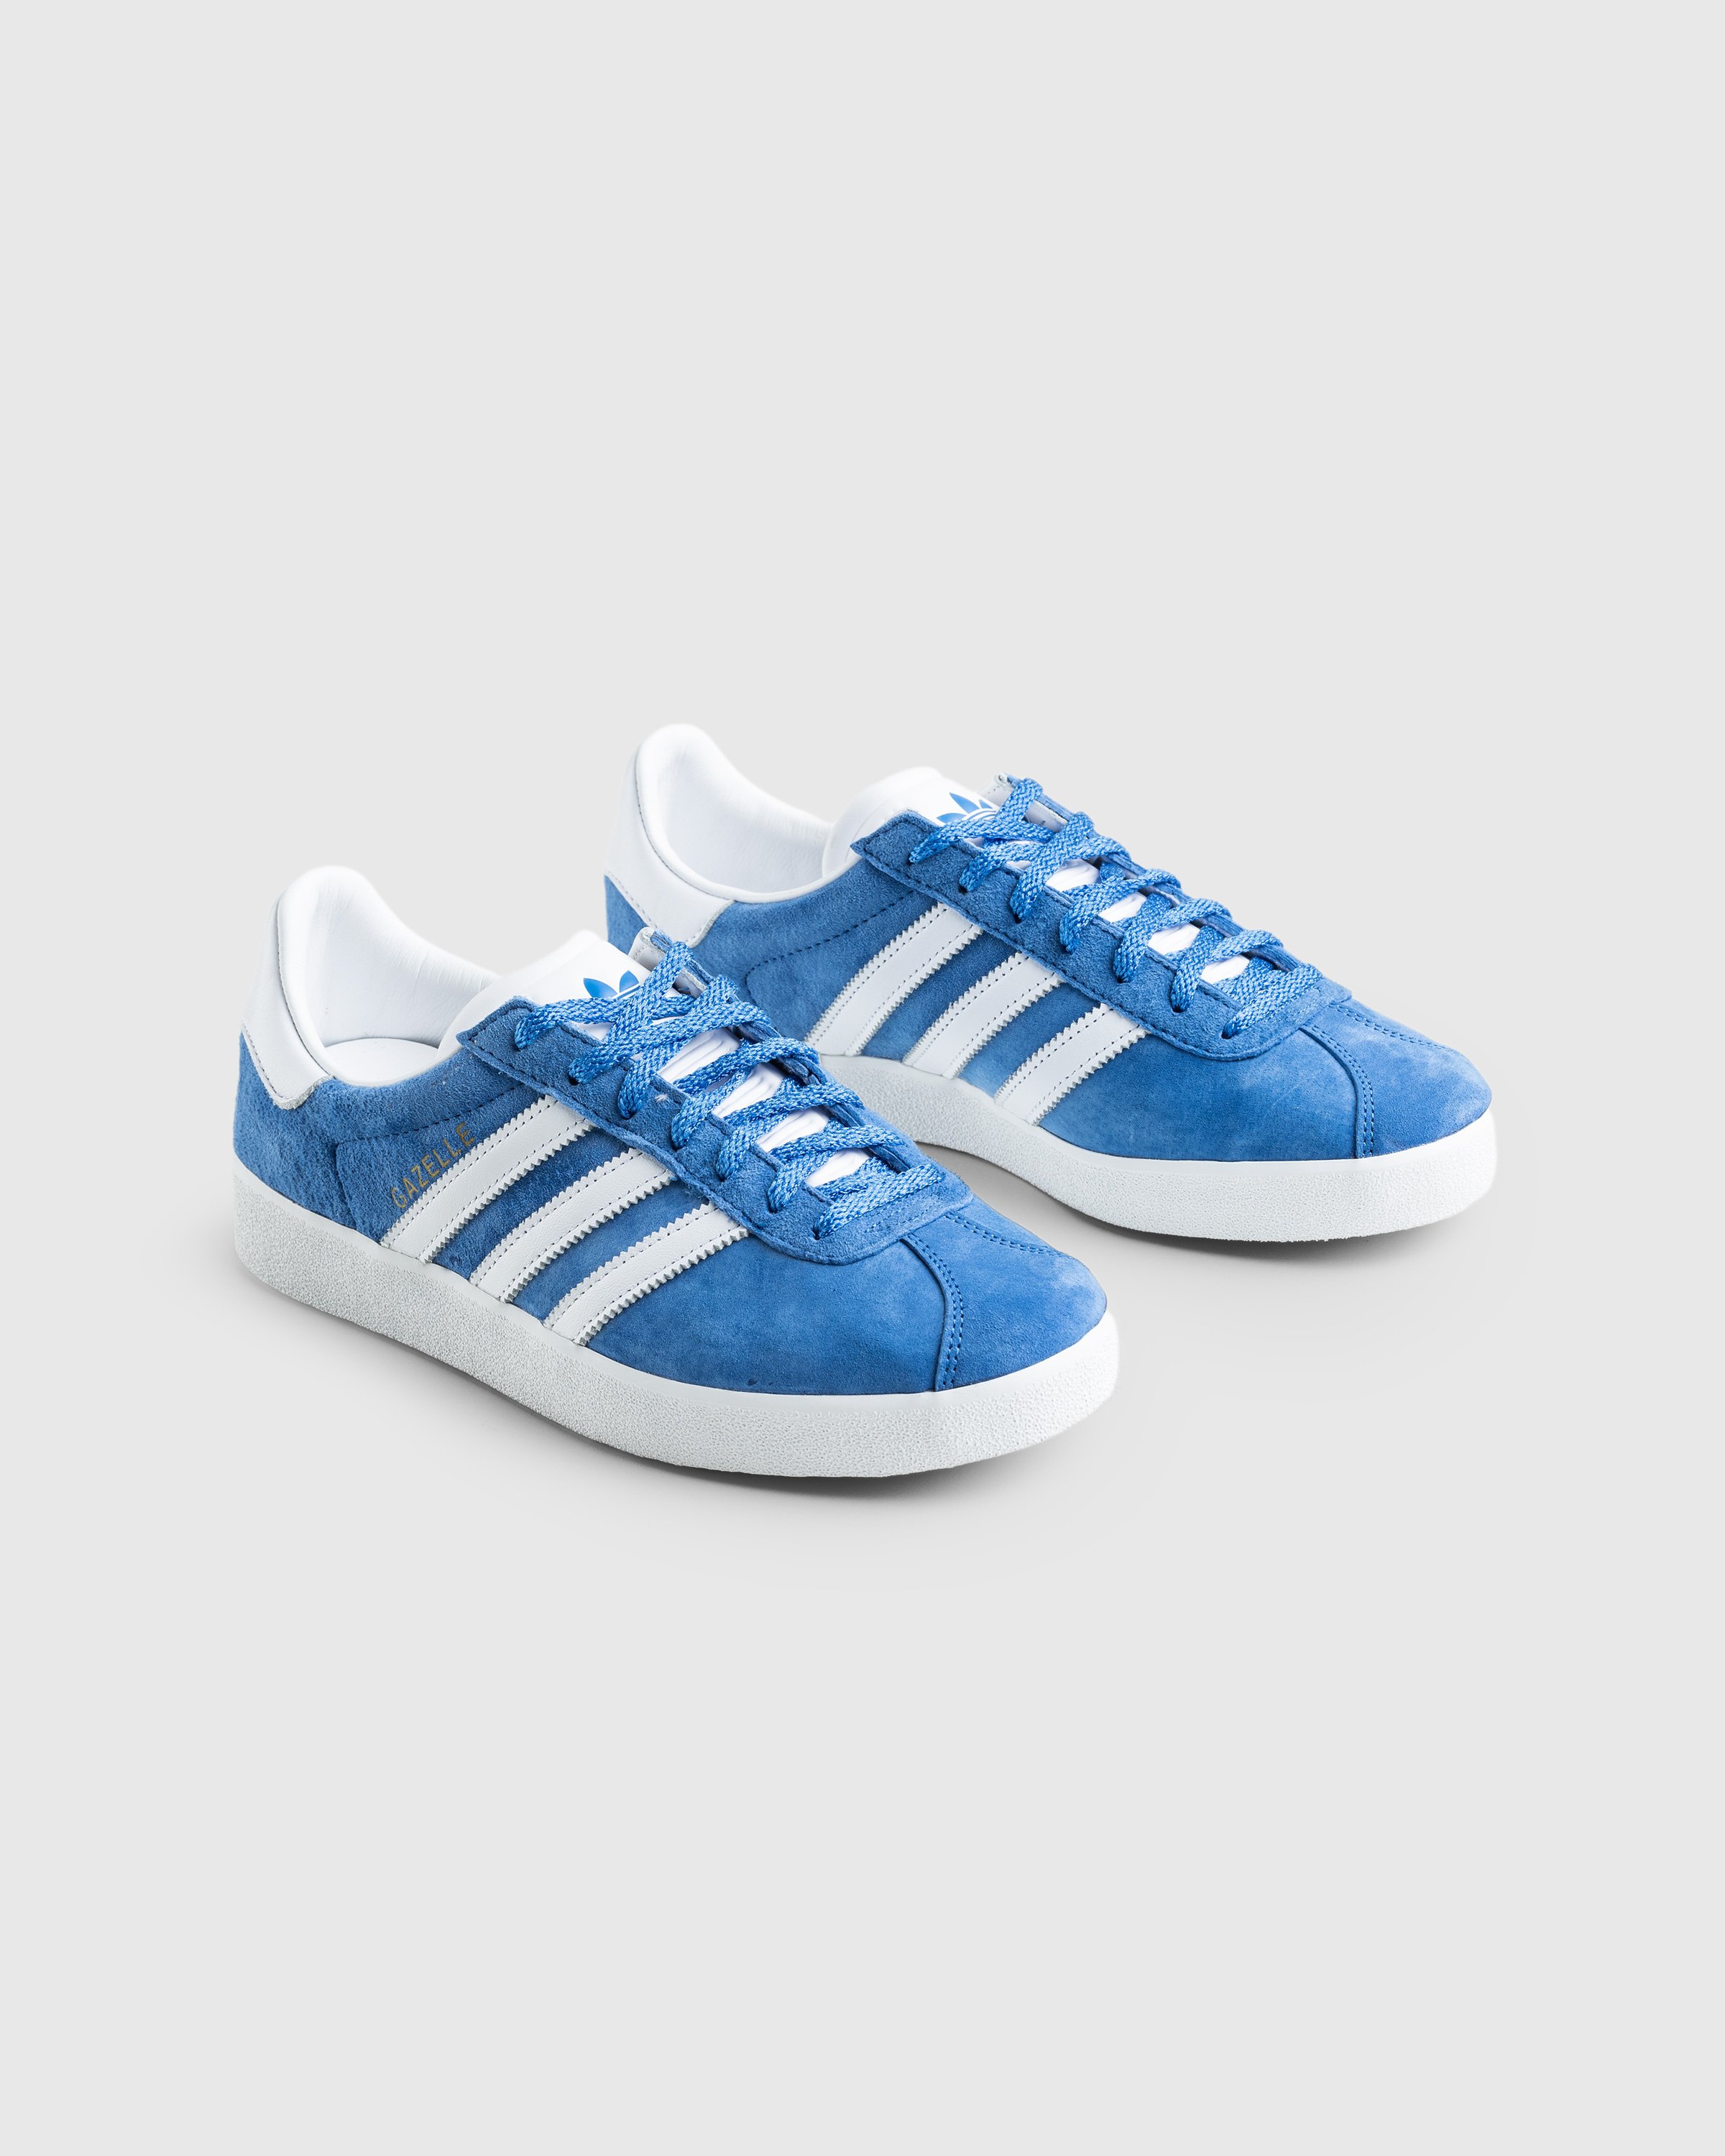 Adidas - Gazelle 85 Blue - Footwear - Blue - Image 3